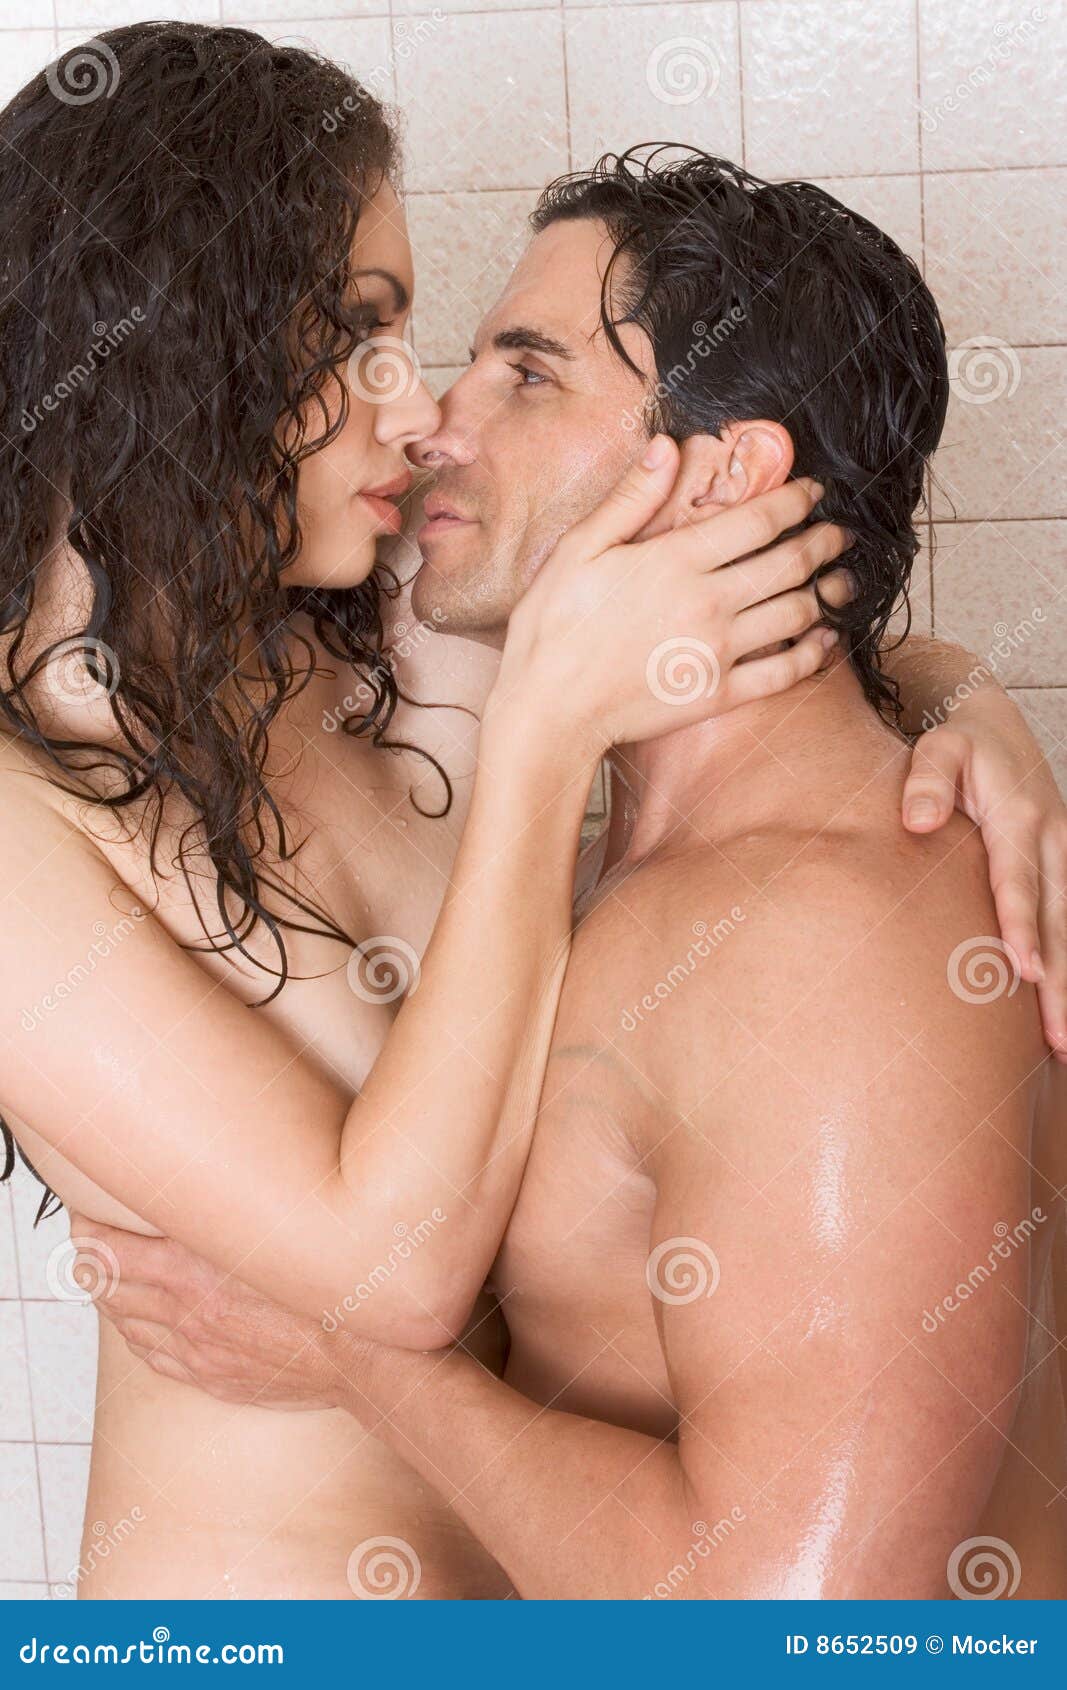 naked man and woman fuckinh